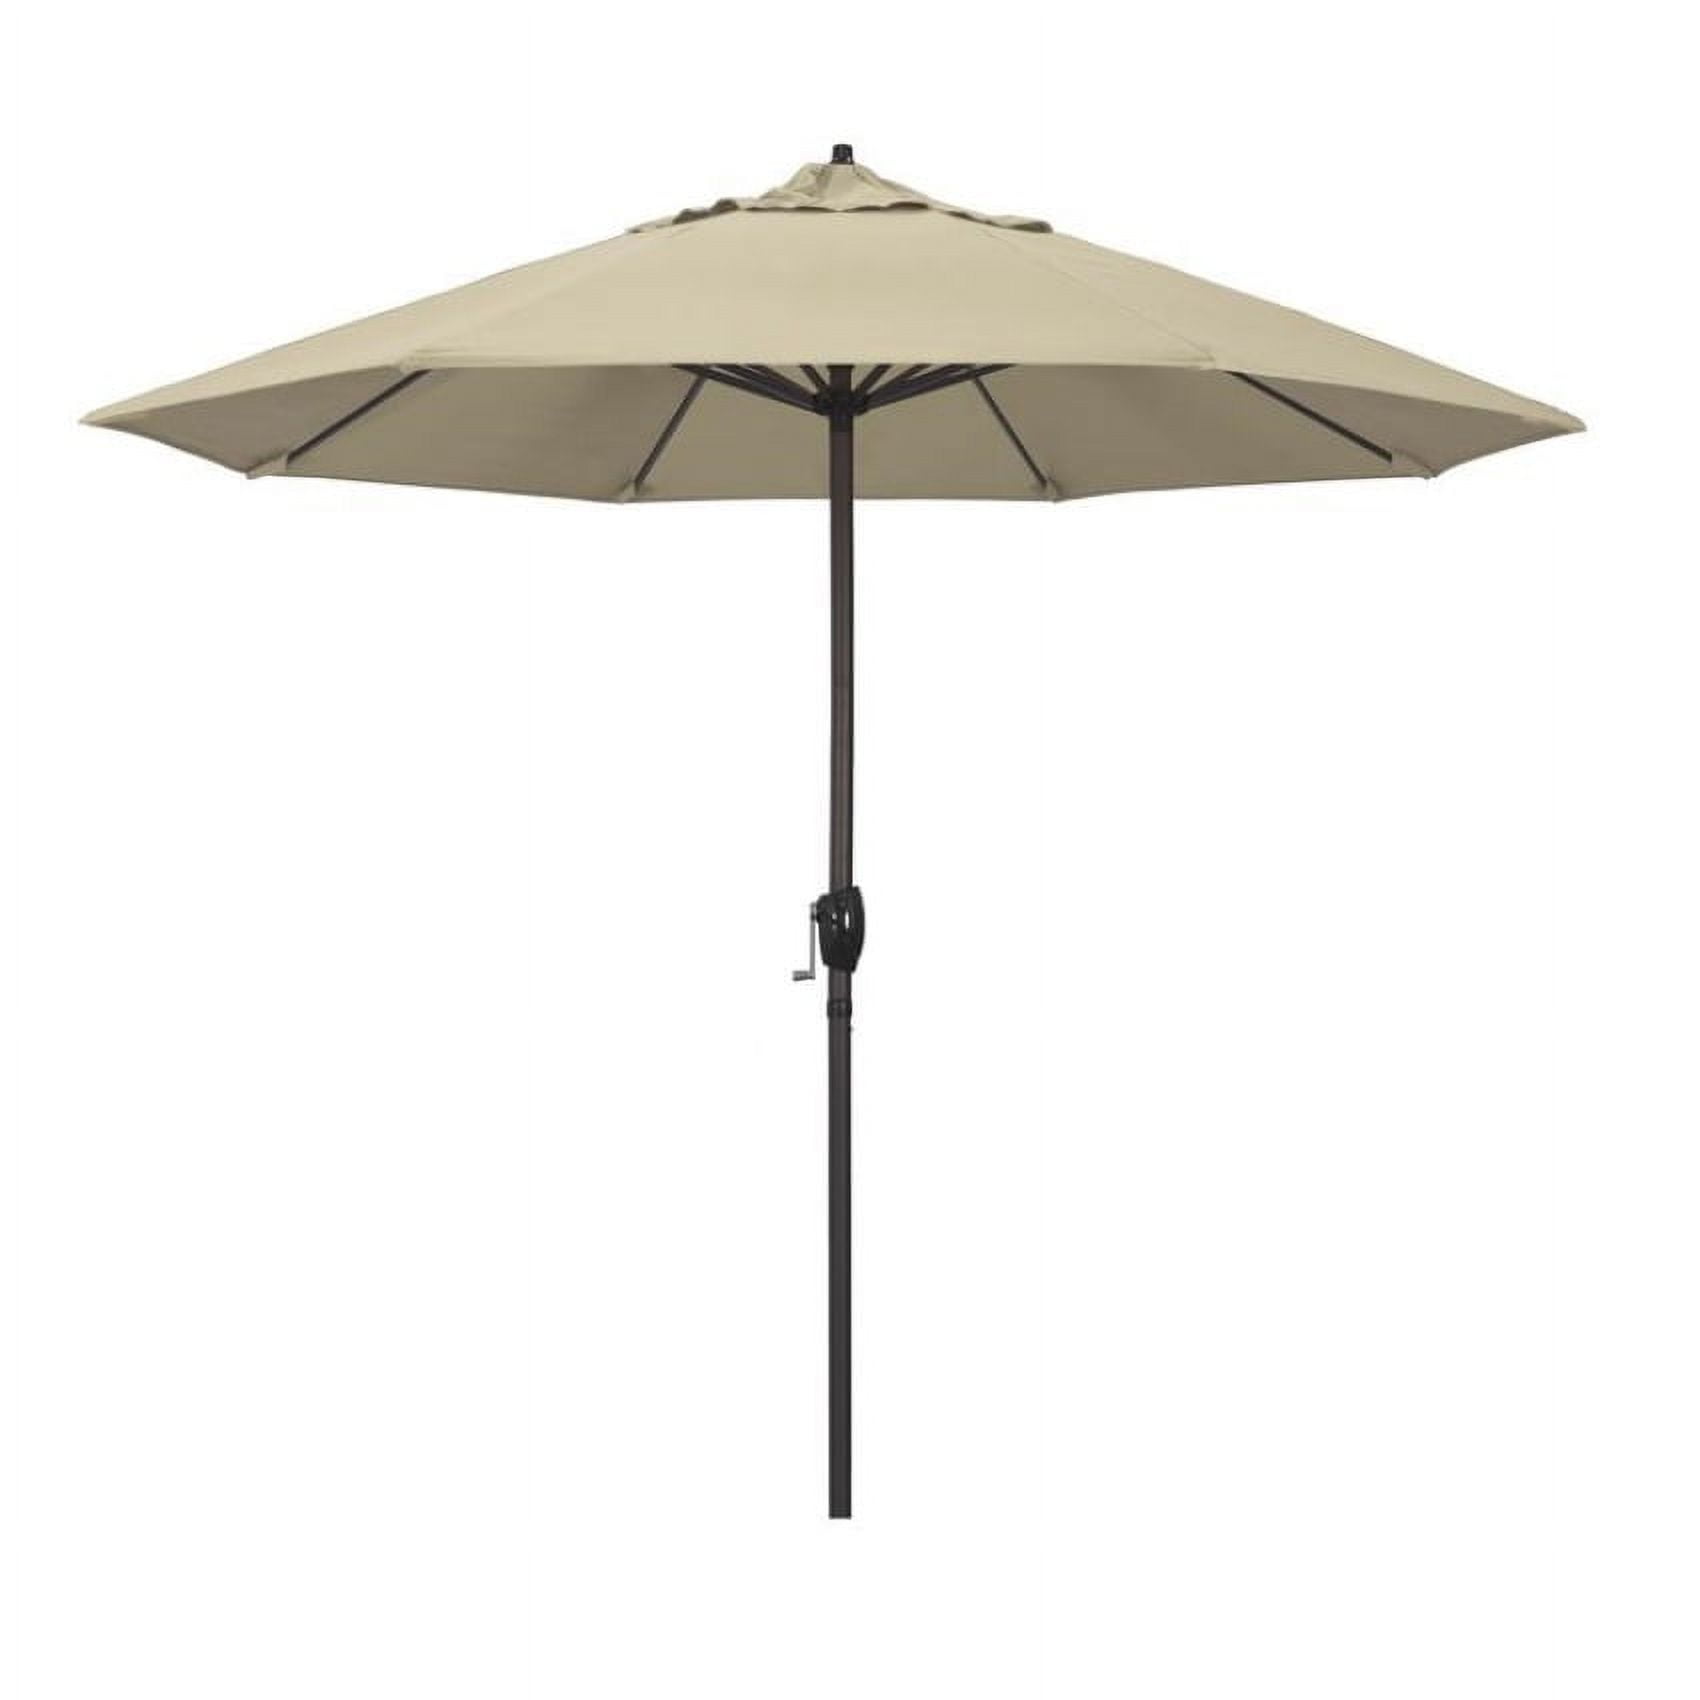 Ata908117-5422 9 Ft. Casa Series Patio Bronze Auto Tilt Crank Lift - Sunbrella 1a Beige Fabric